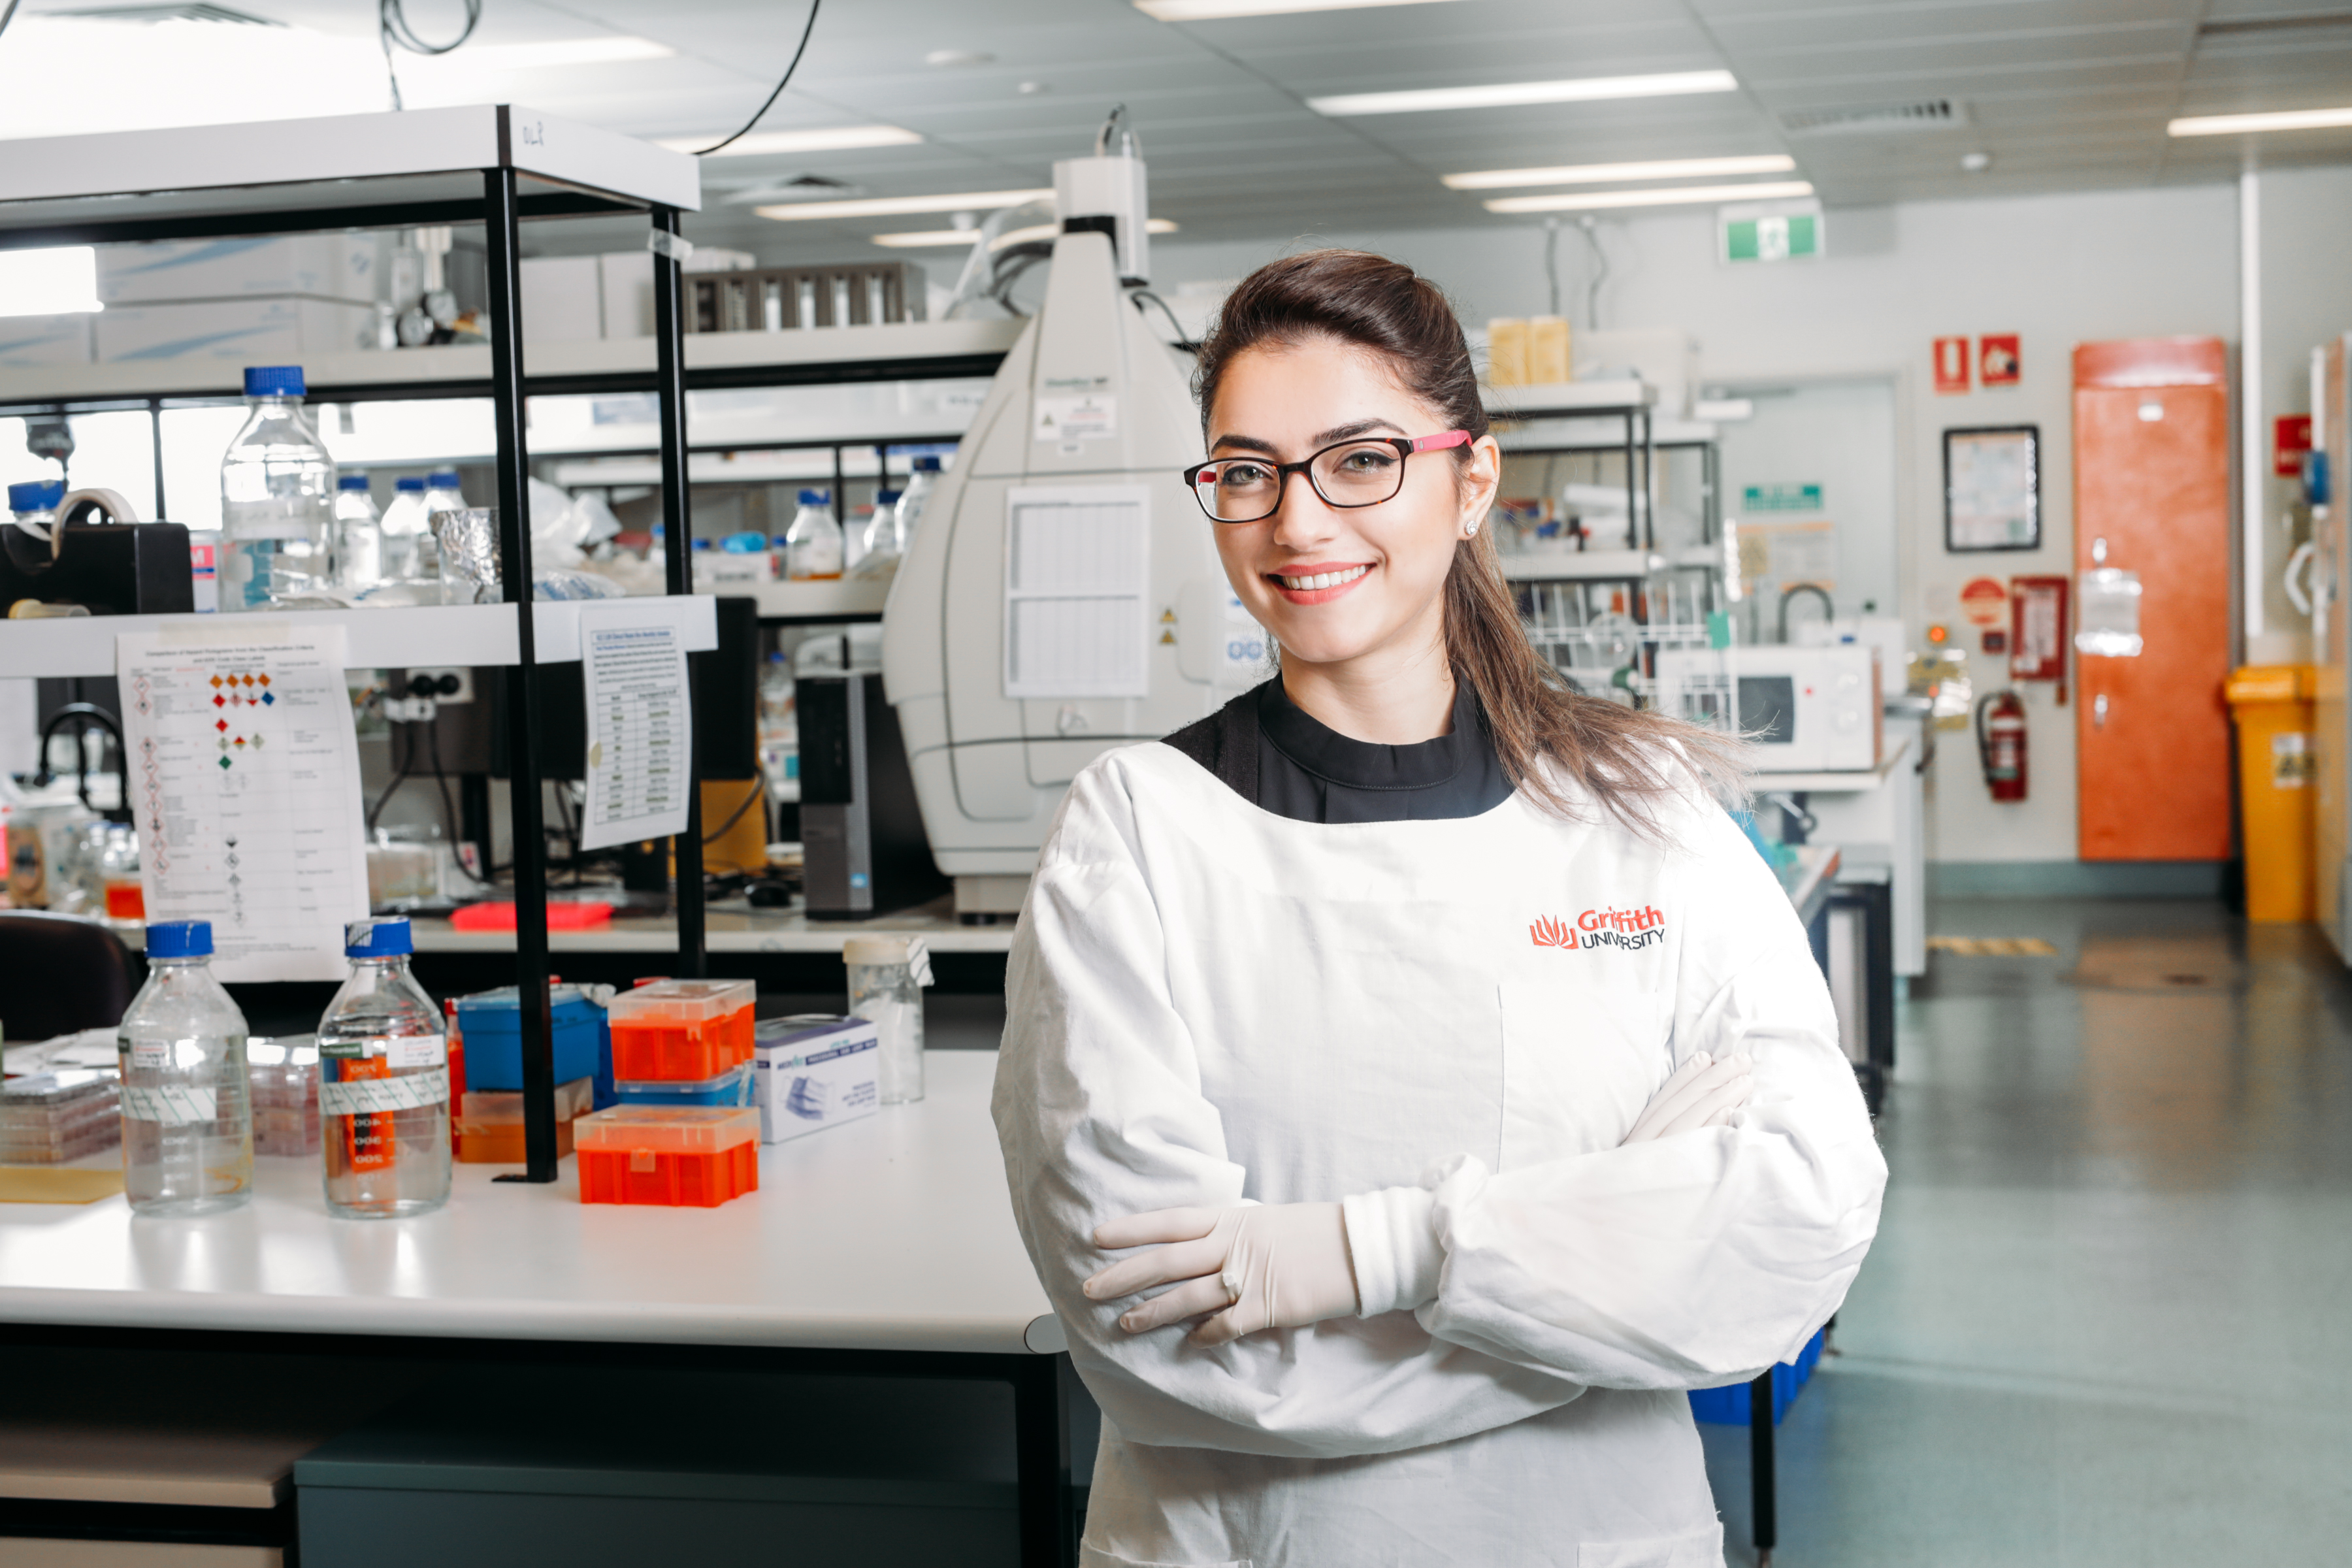 بورسیه پزشکی دانشگاه گریفیت استرالیا برای سال تحصیلی 2019-2020